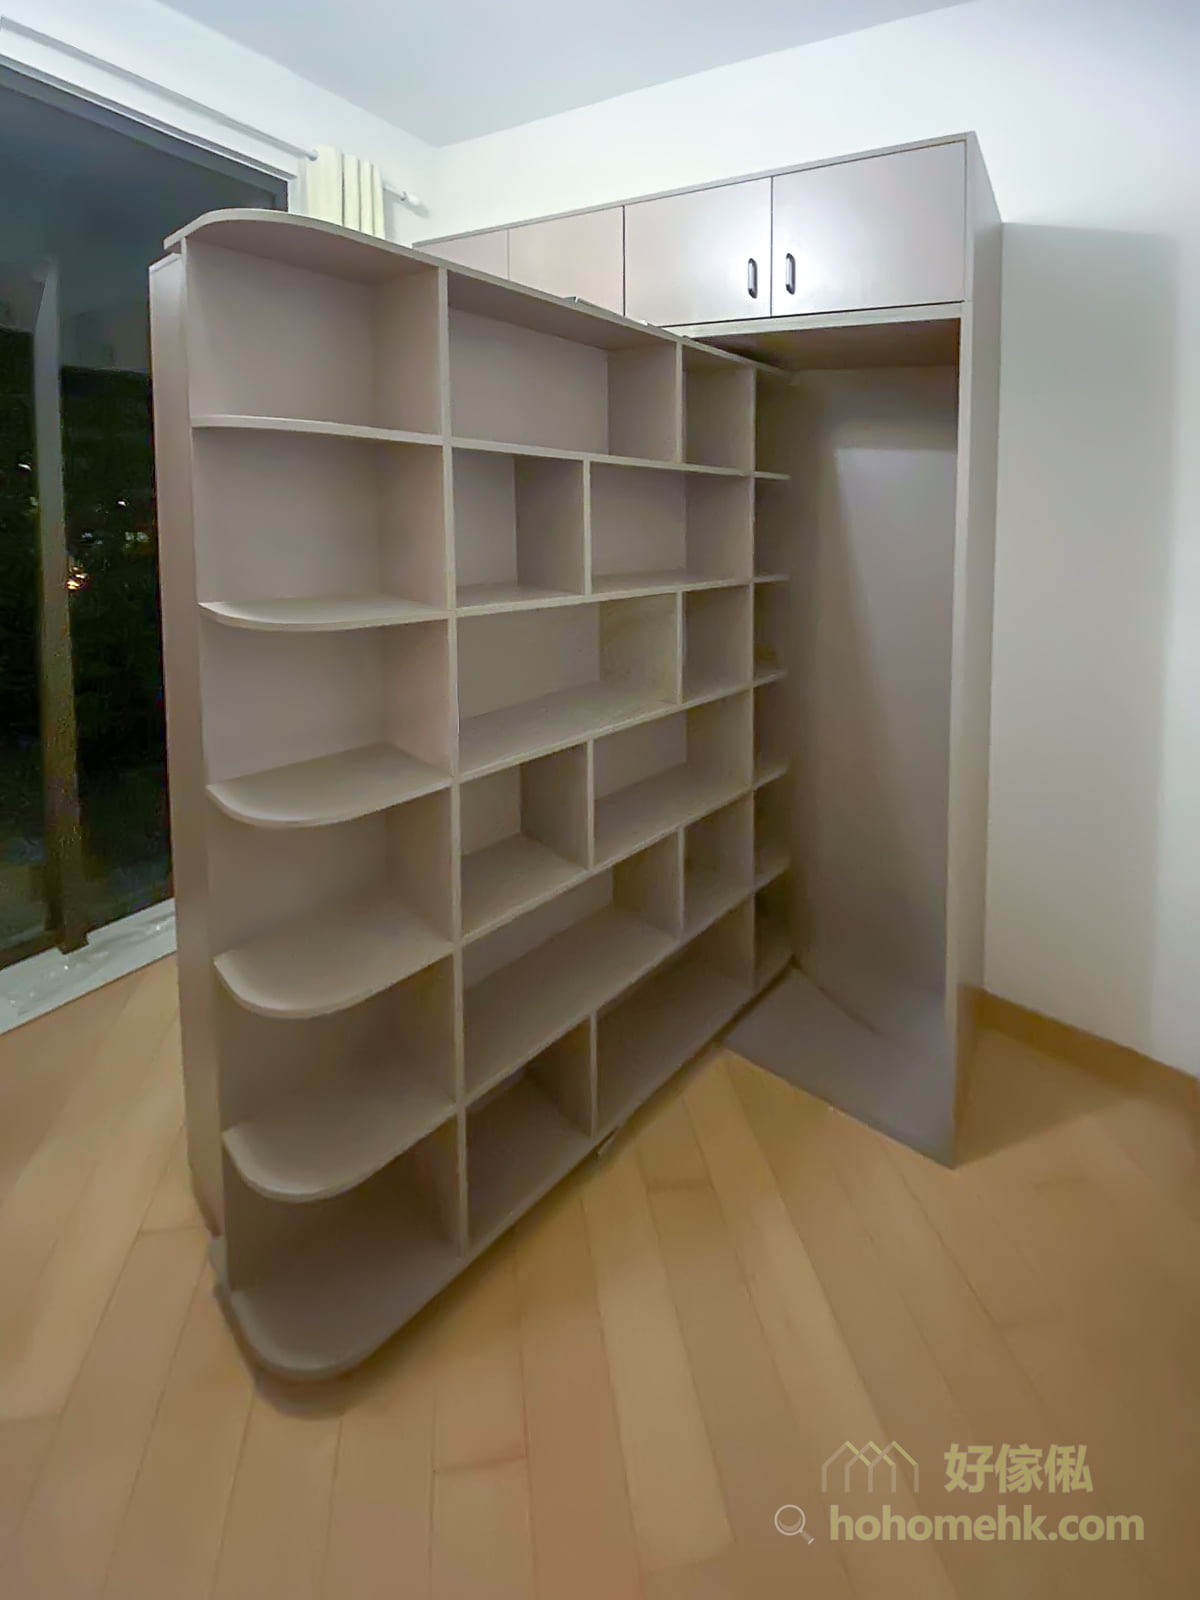 機能書架床, 表面看到的是一個書櫃，180度旋轉之後就變成一張下翻式的機能床